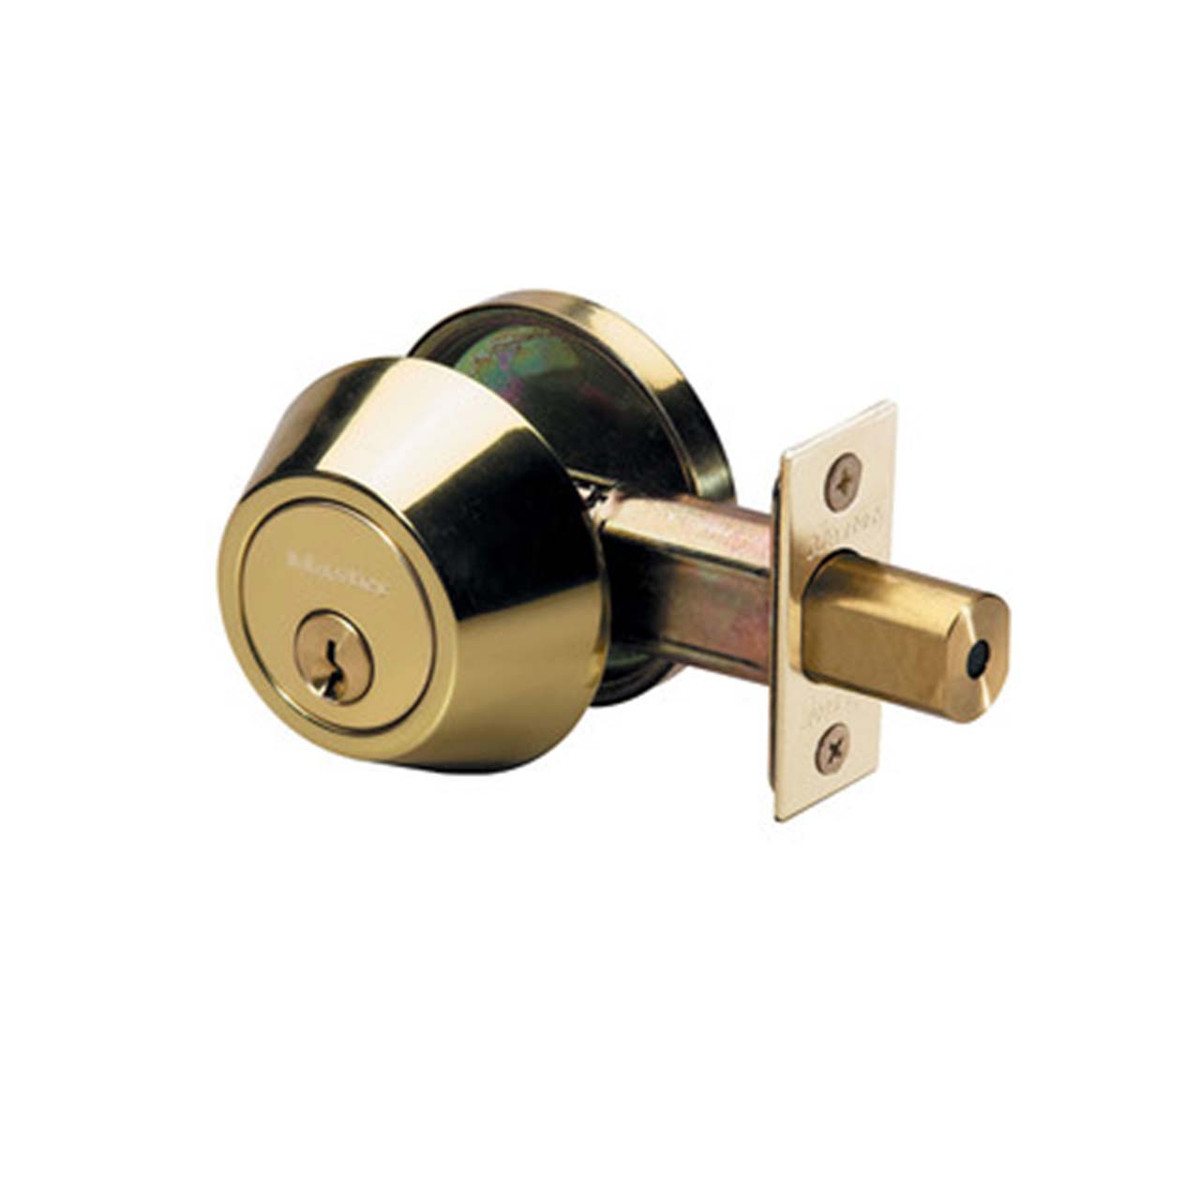 Master Lock DS0603 Grade 3 Single Cylinder Deadbolt, SC1 Keyway, 03 Polished Brass, Adjustable Backset 2-3/8" or 2-3/4"